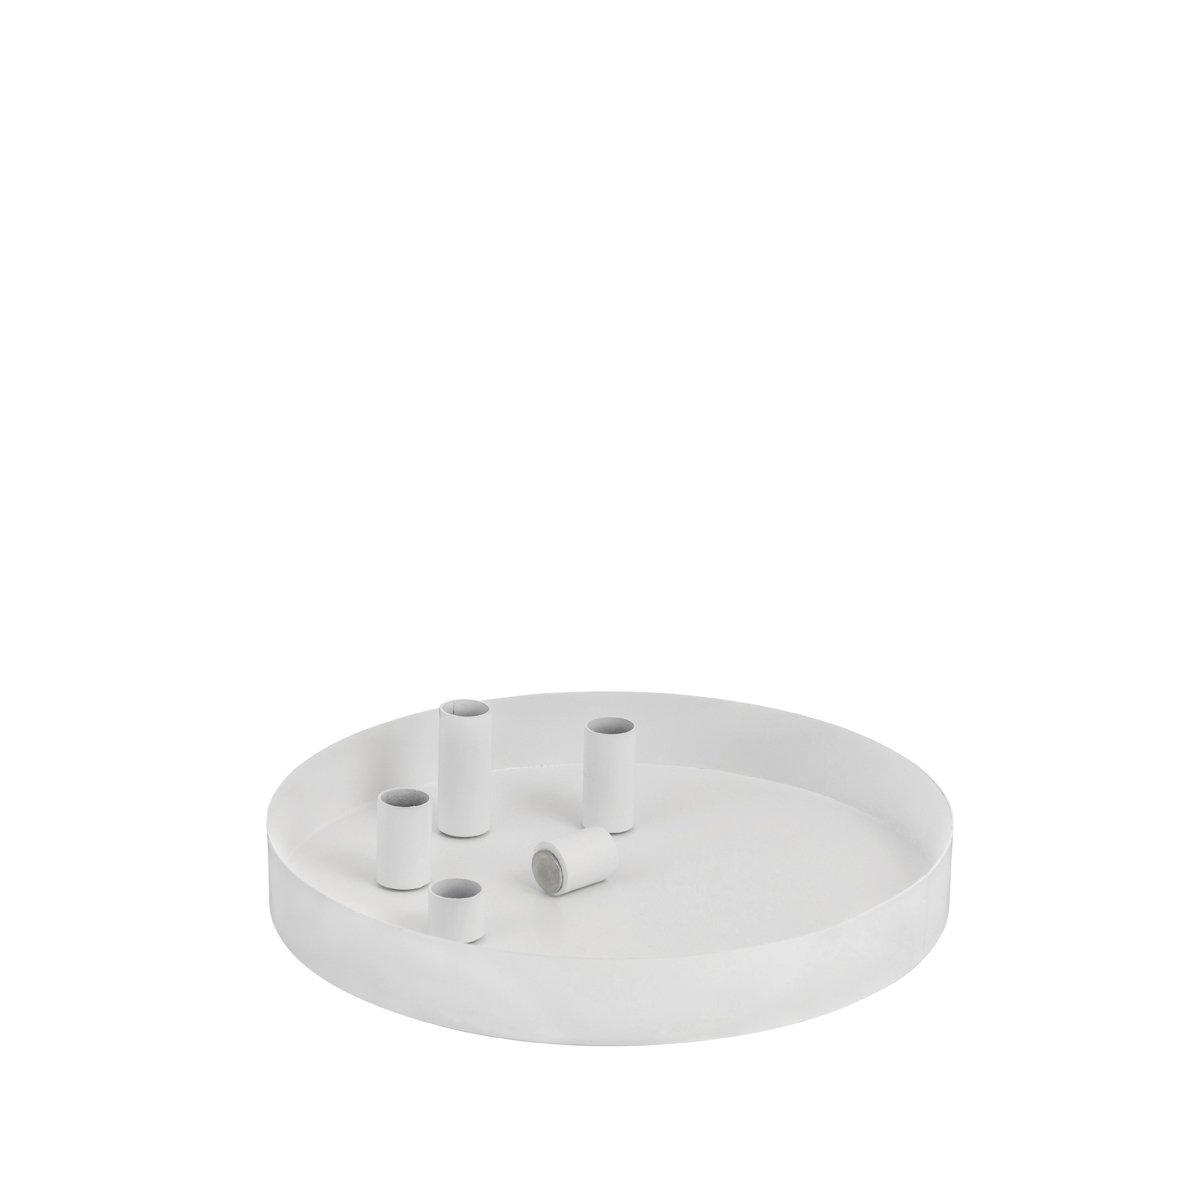 Rund hvid bakke med fem magnetiske lysholdere
Ø: 31 cm H: 4 cm